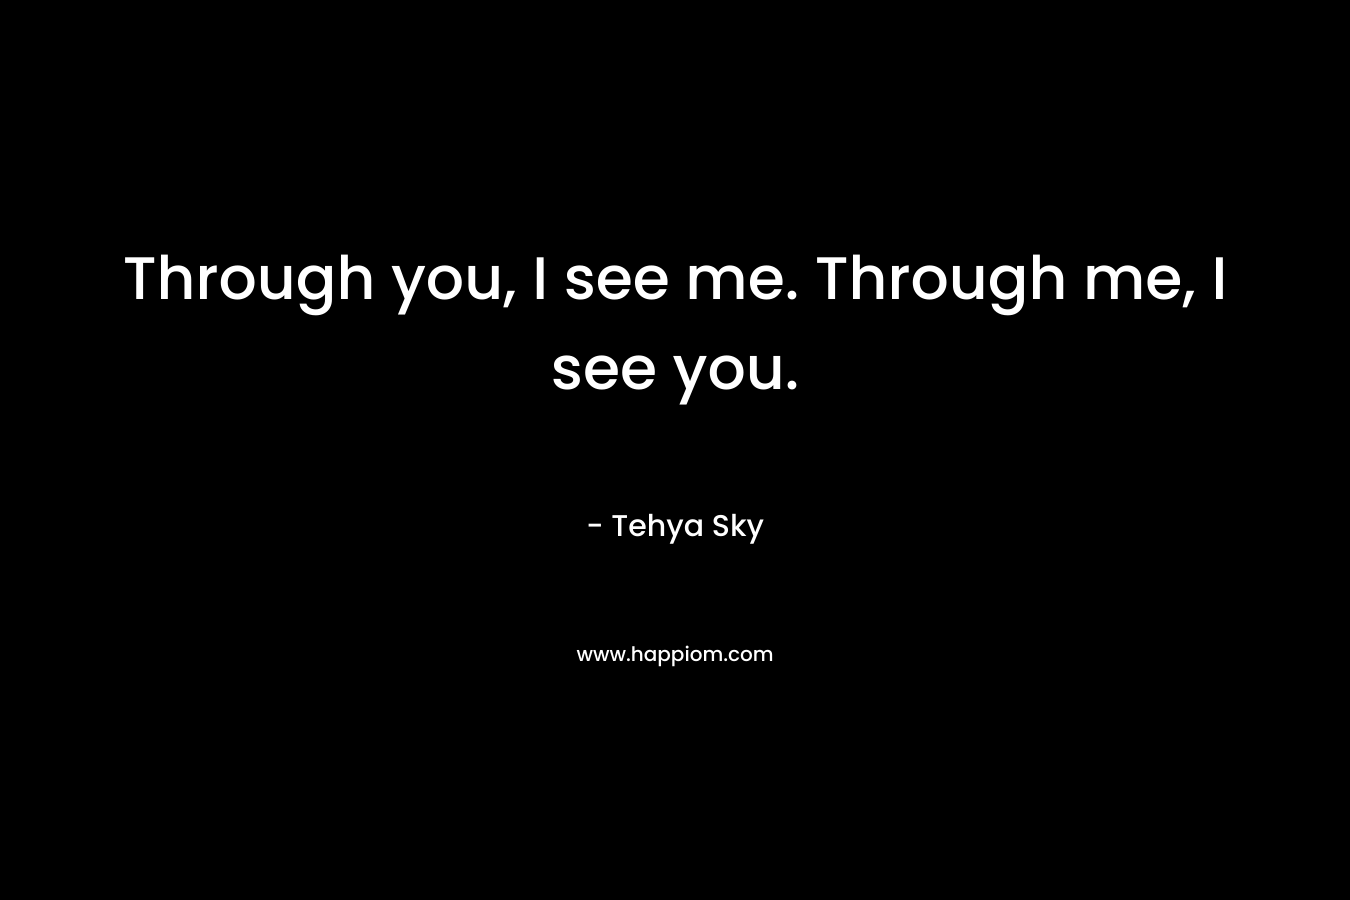 Through you, I see me. Through me, I see you.